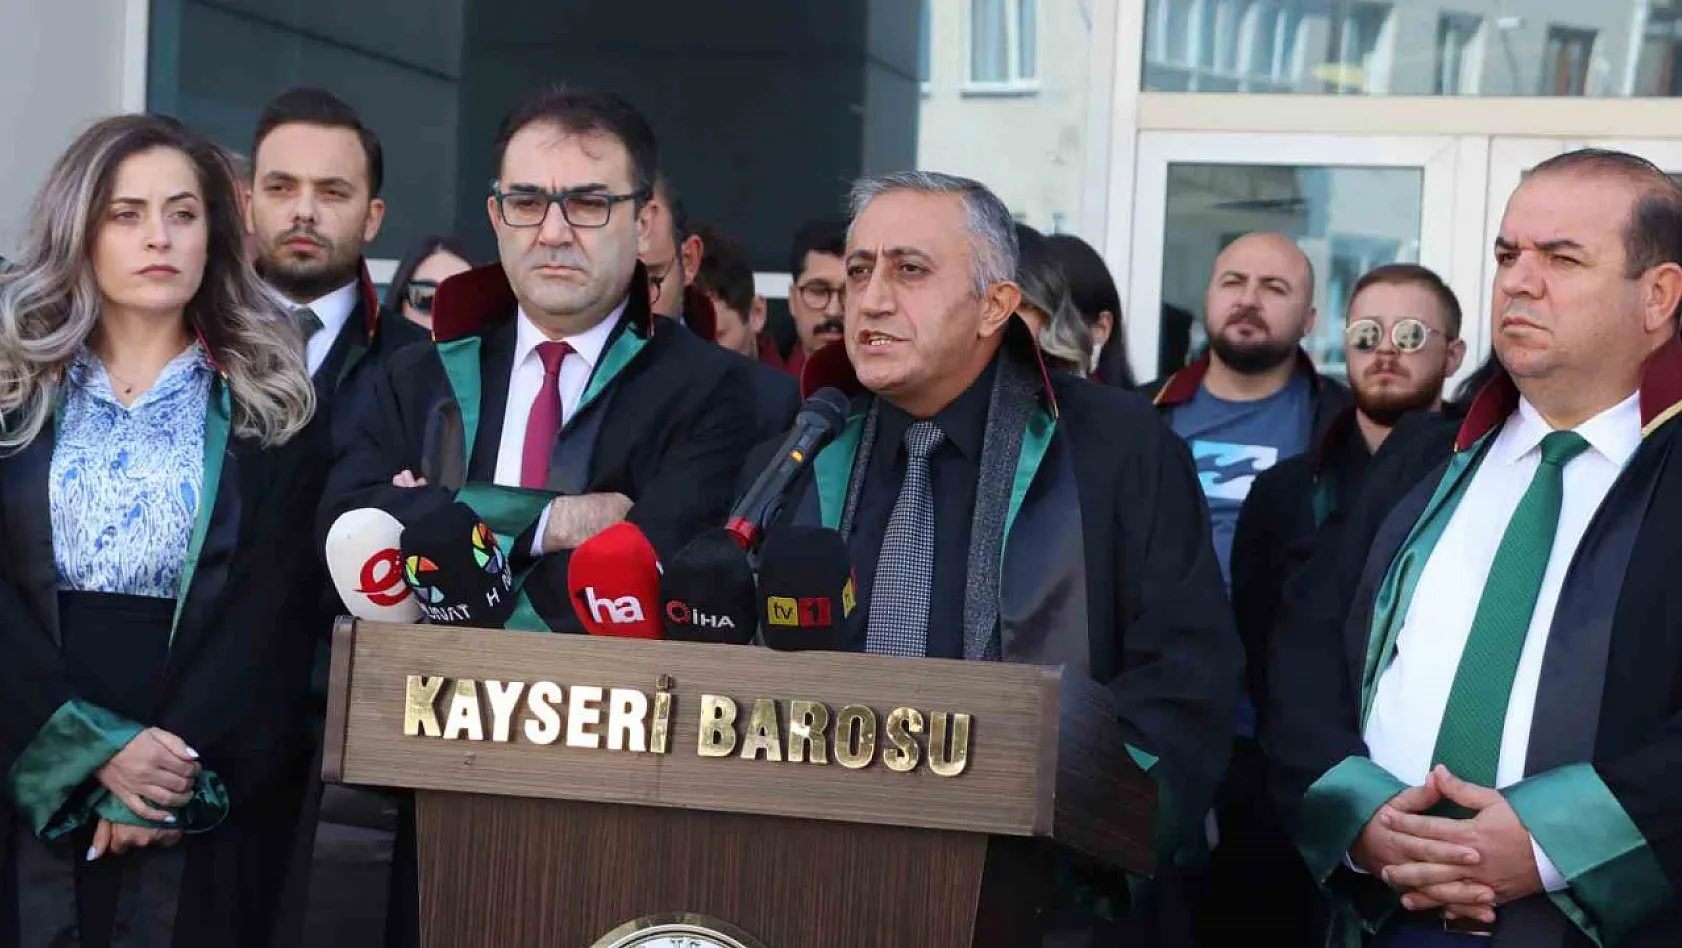 Kayseri Barosu'ndan avukatlara yönelik saldırılara tepki